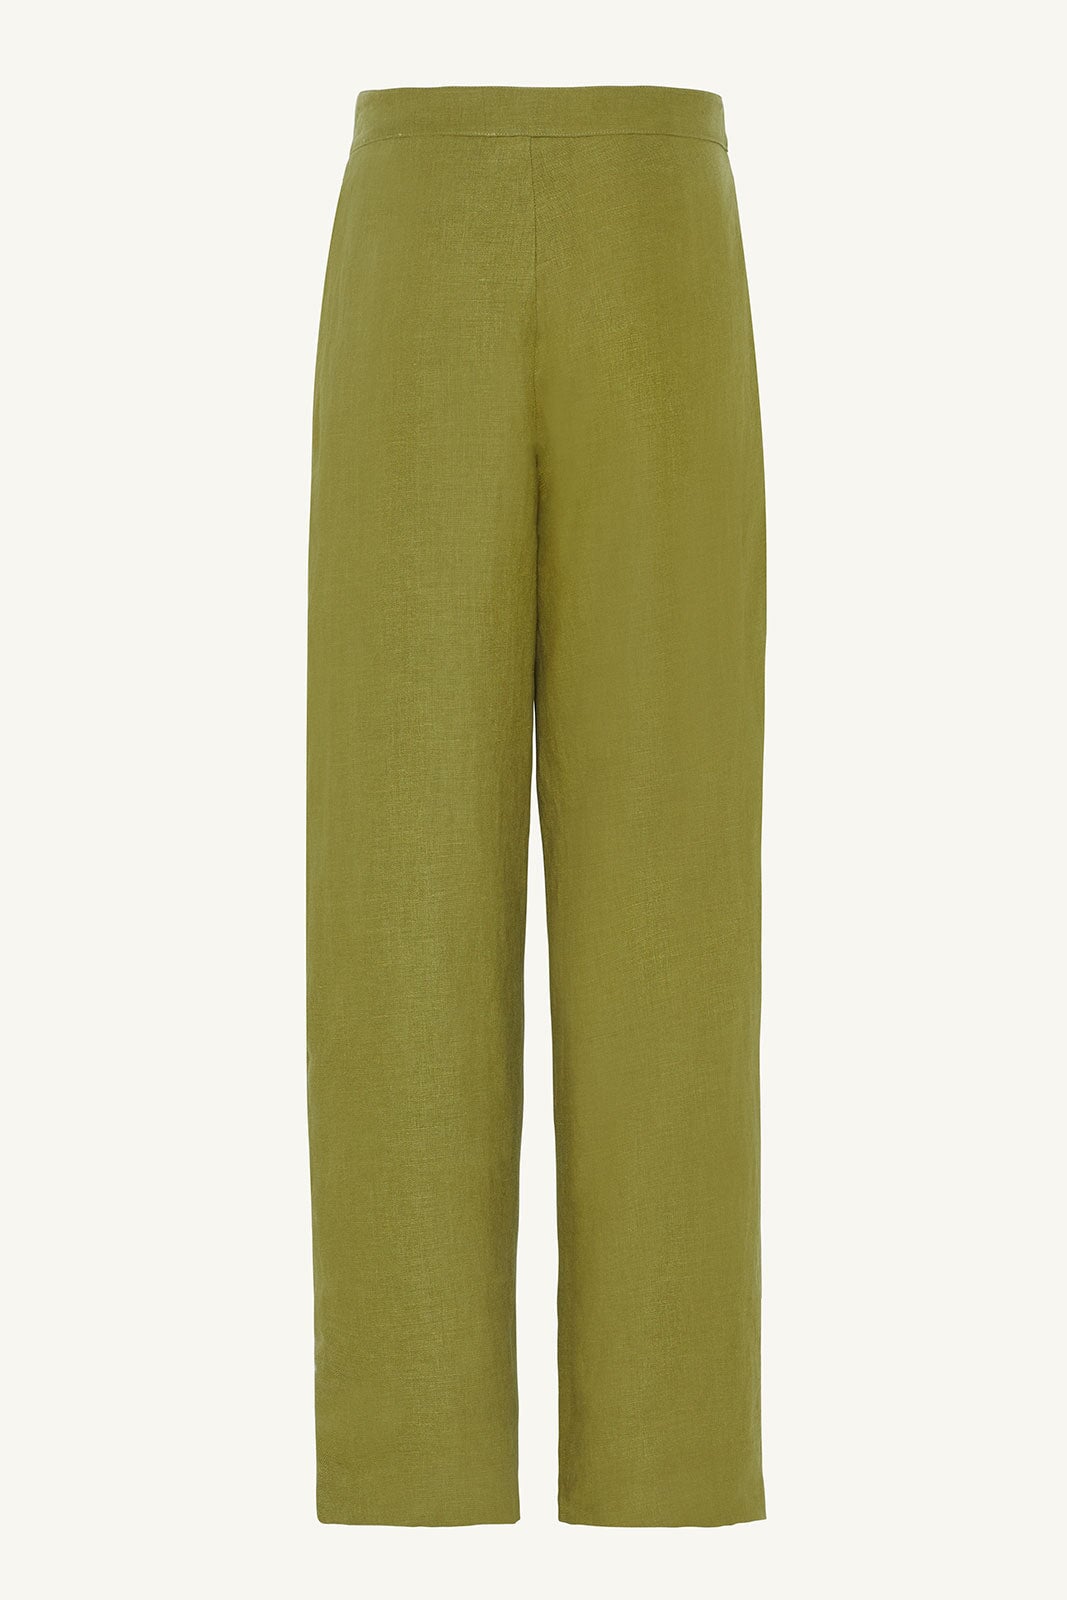 Linen Straight Leg Pants - Avocado Clothing epschoolboard 